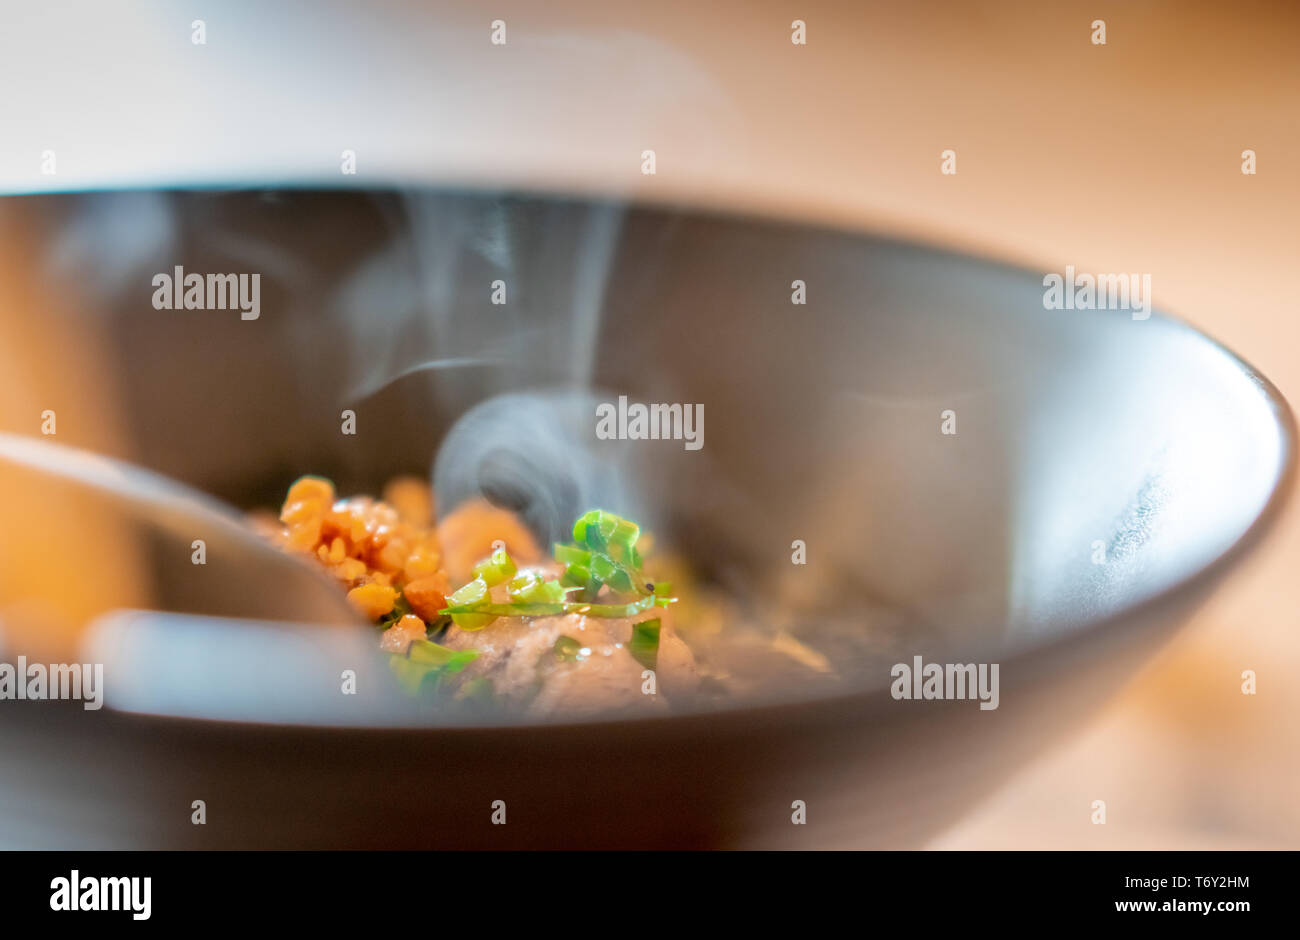 Soupe de nouilles cuites avec du porc. Fraîche et chaude, la soupe aux nouilles en bol sur la table dans un restaurant. L'alimentation de rue en Thaïlande. Déjeuner de style thaïlandais. La cuisine asiatique. Banque D'Images